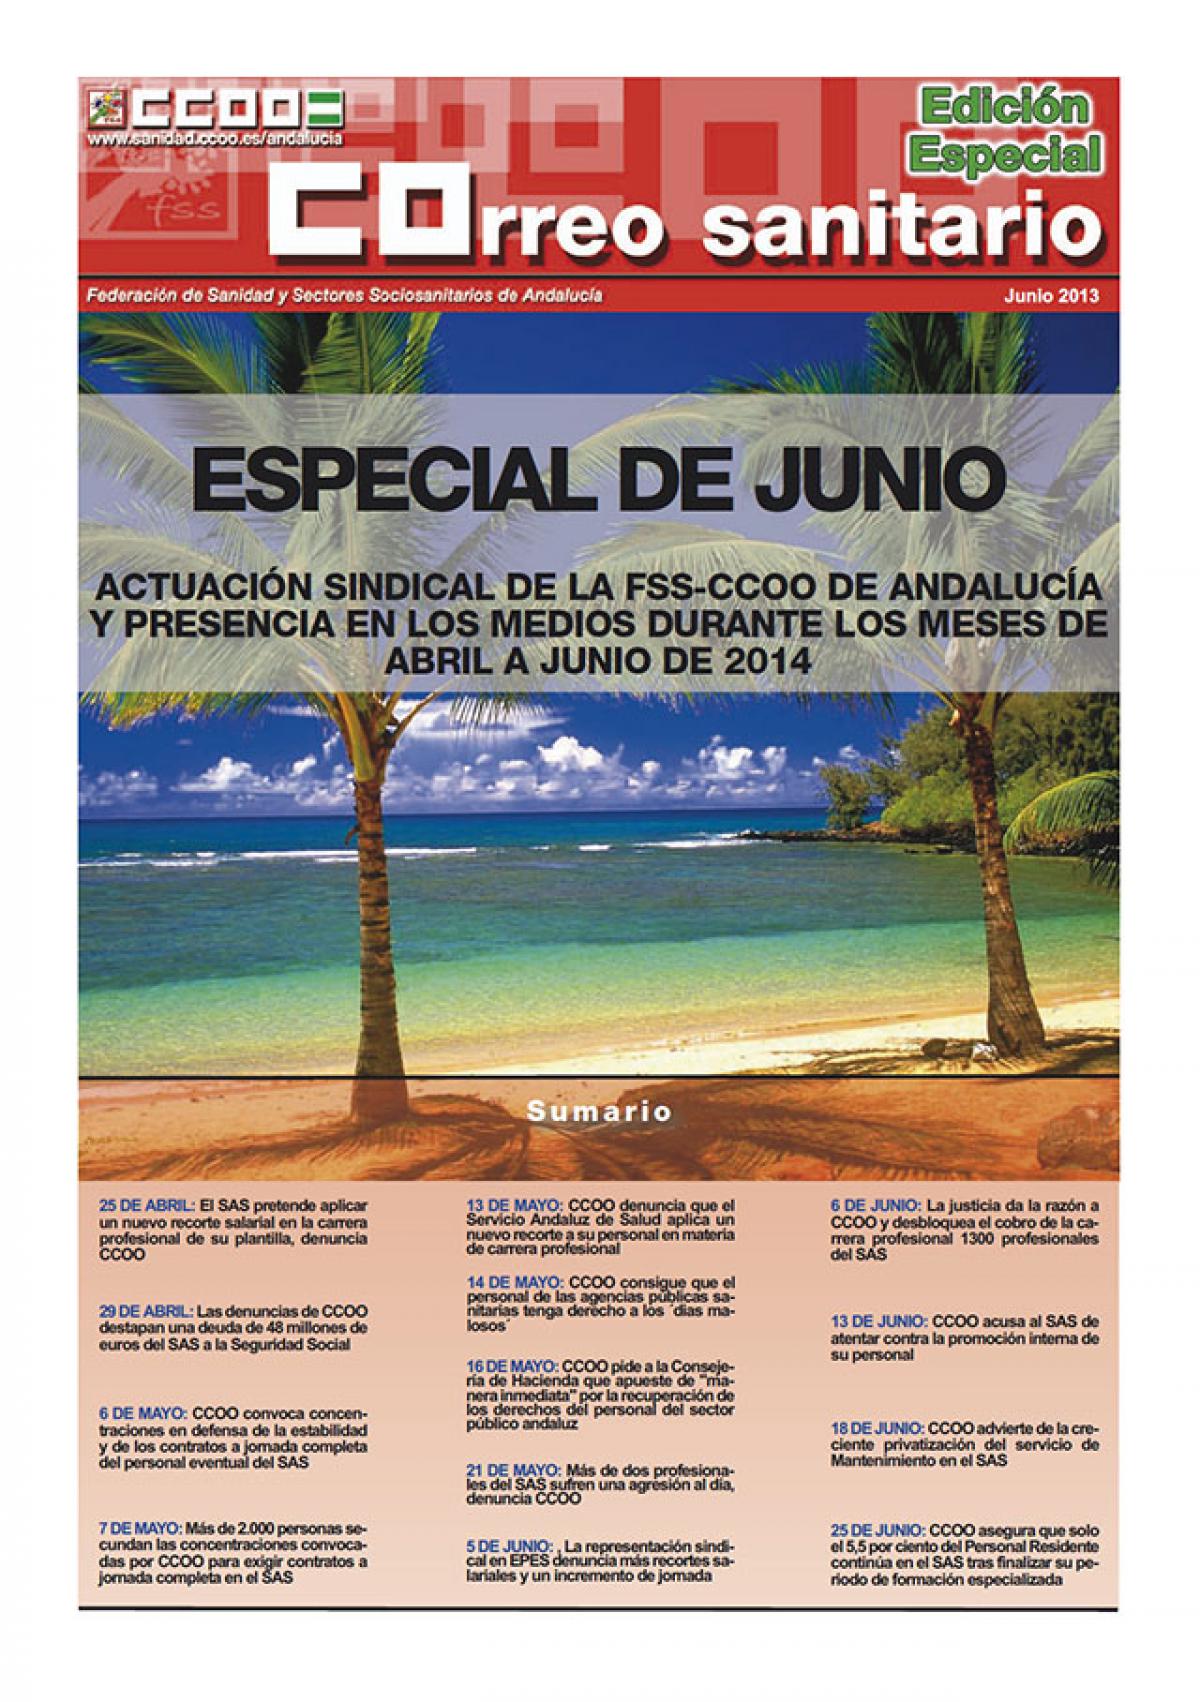 Correo Sanitario EDICION ESPECIAL JUNIO 2014